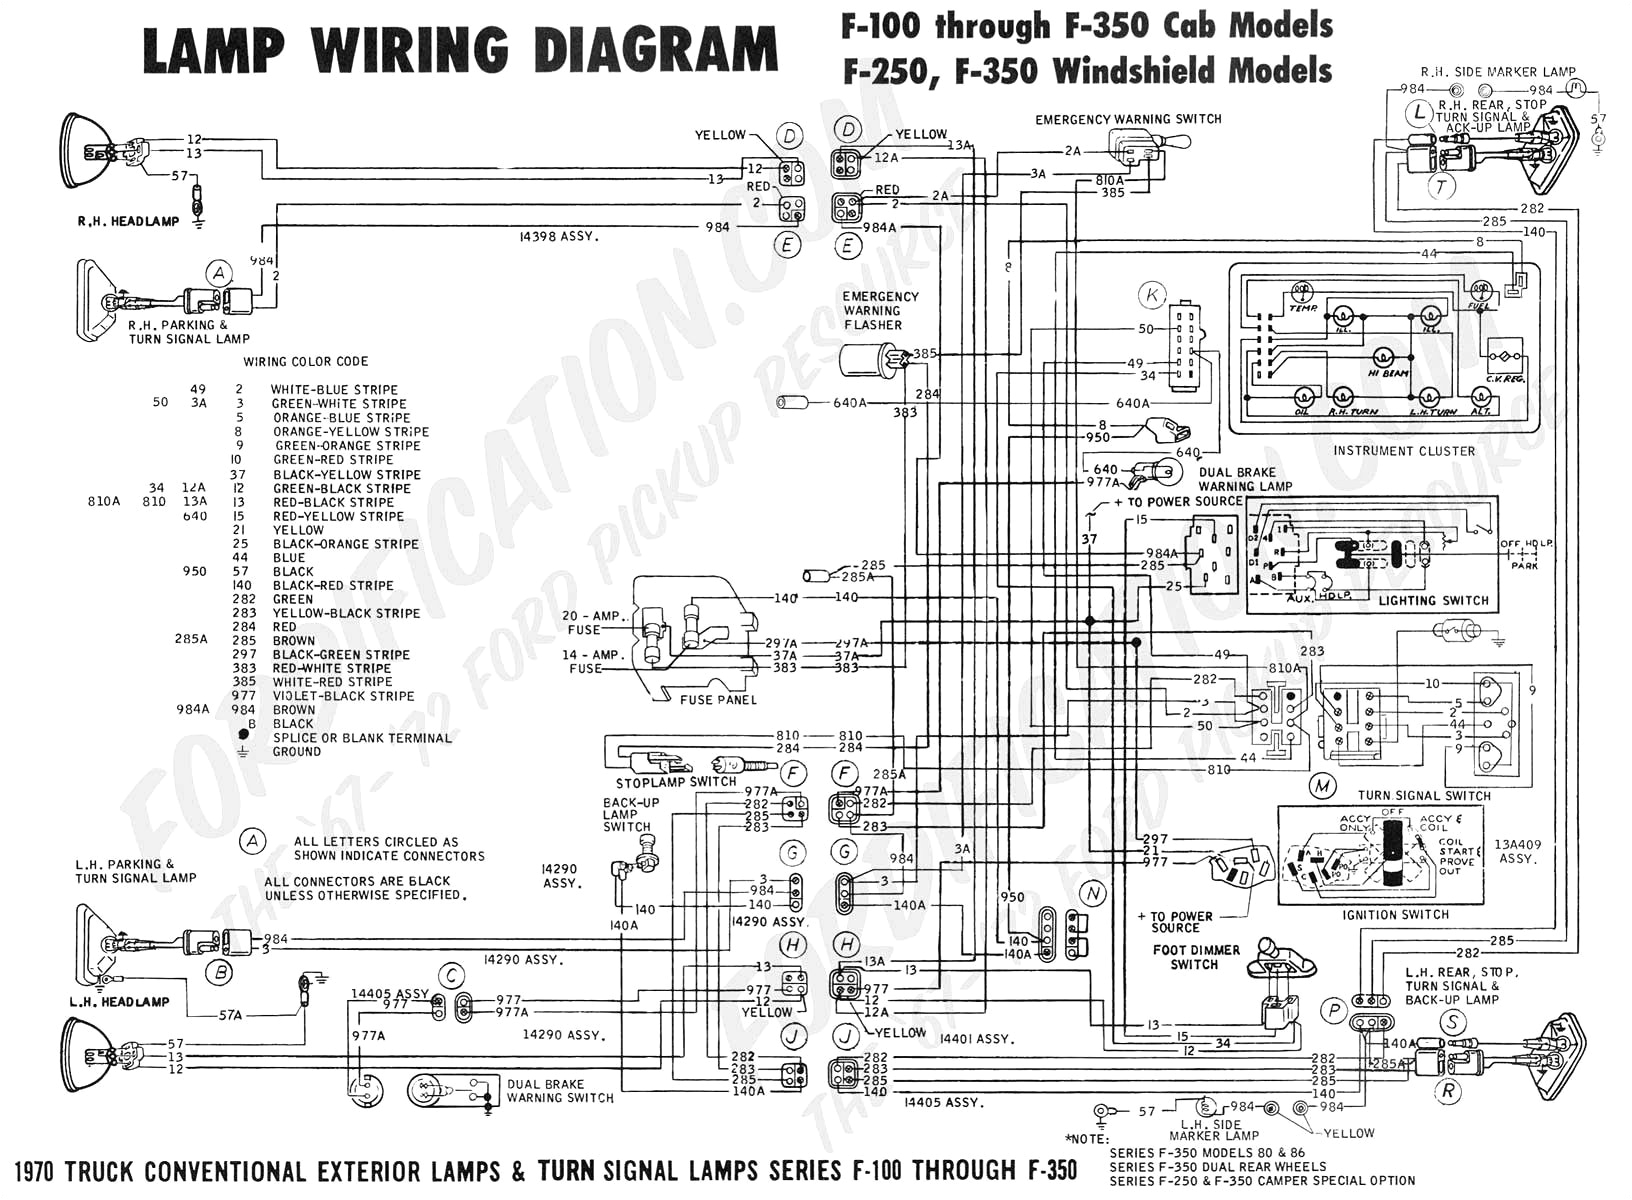 ach wiring diagram model 8 wiring diagrams recent schematic wiring diagram ach 800